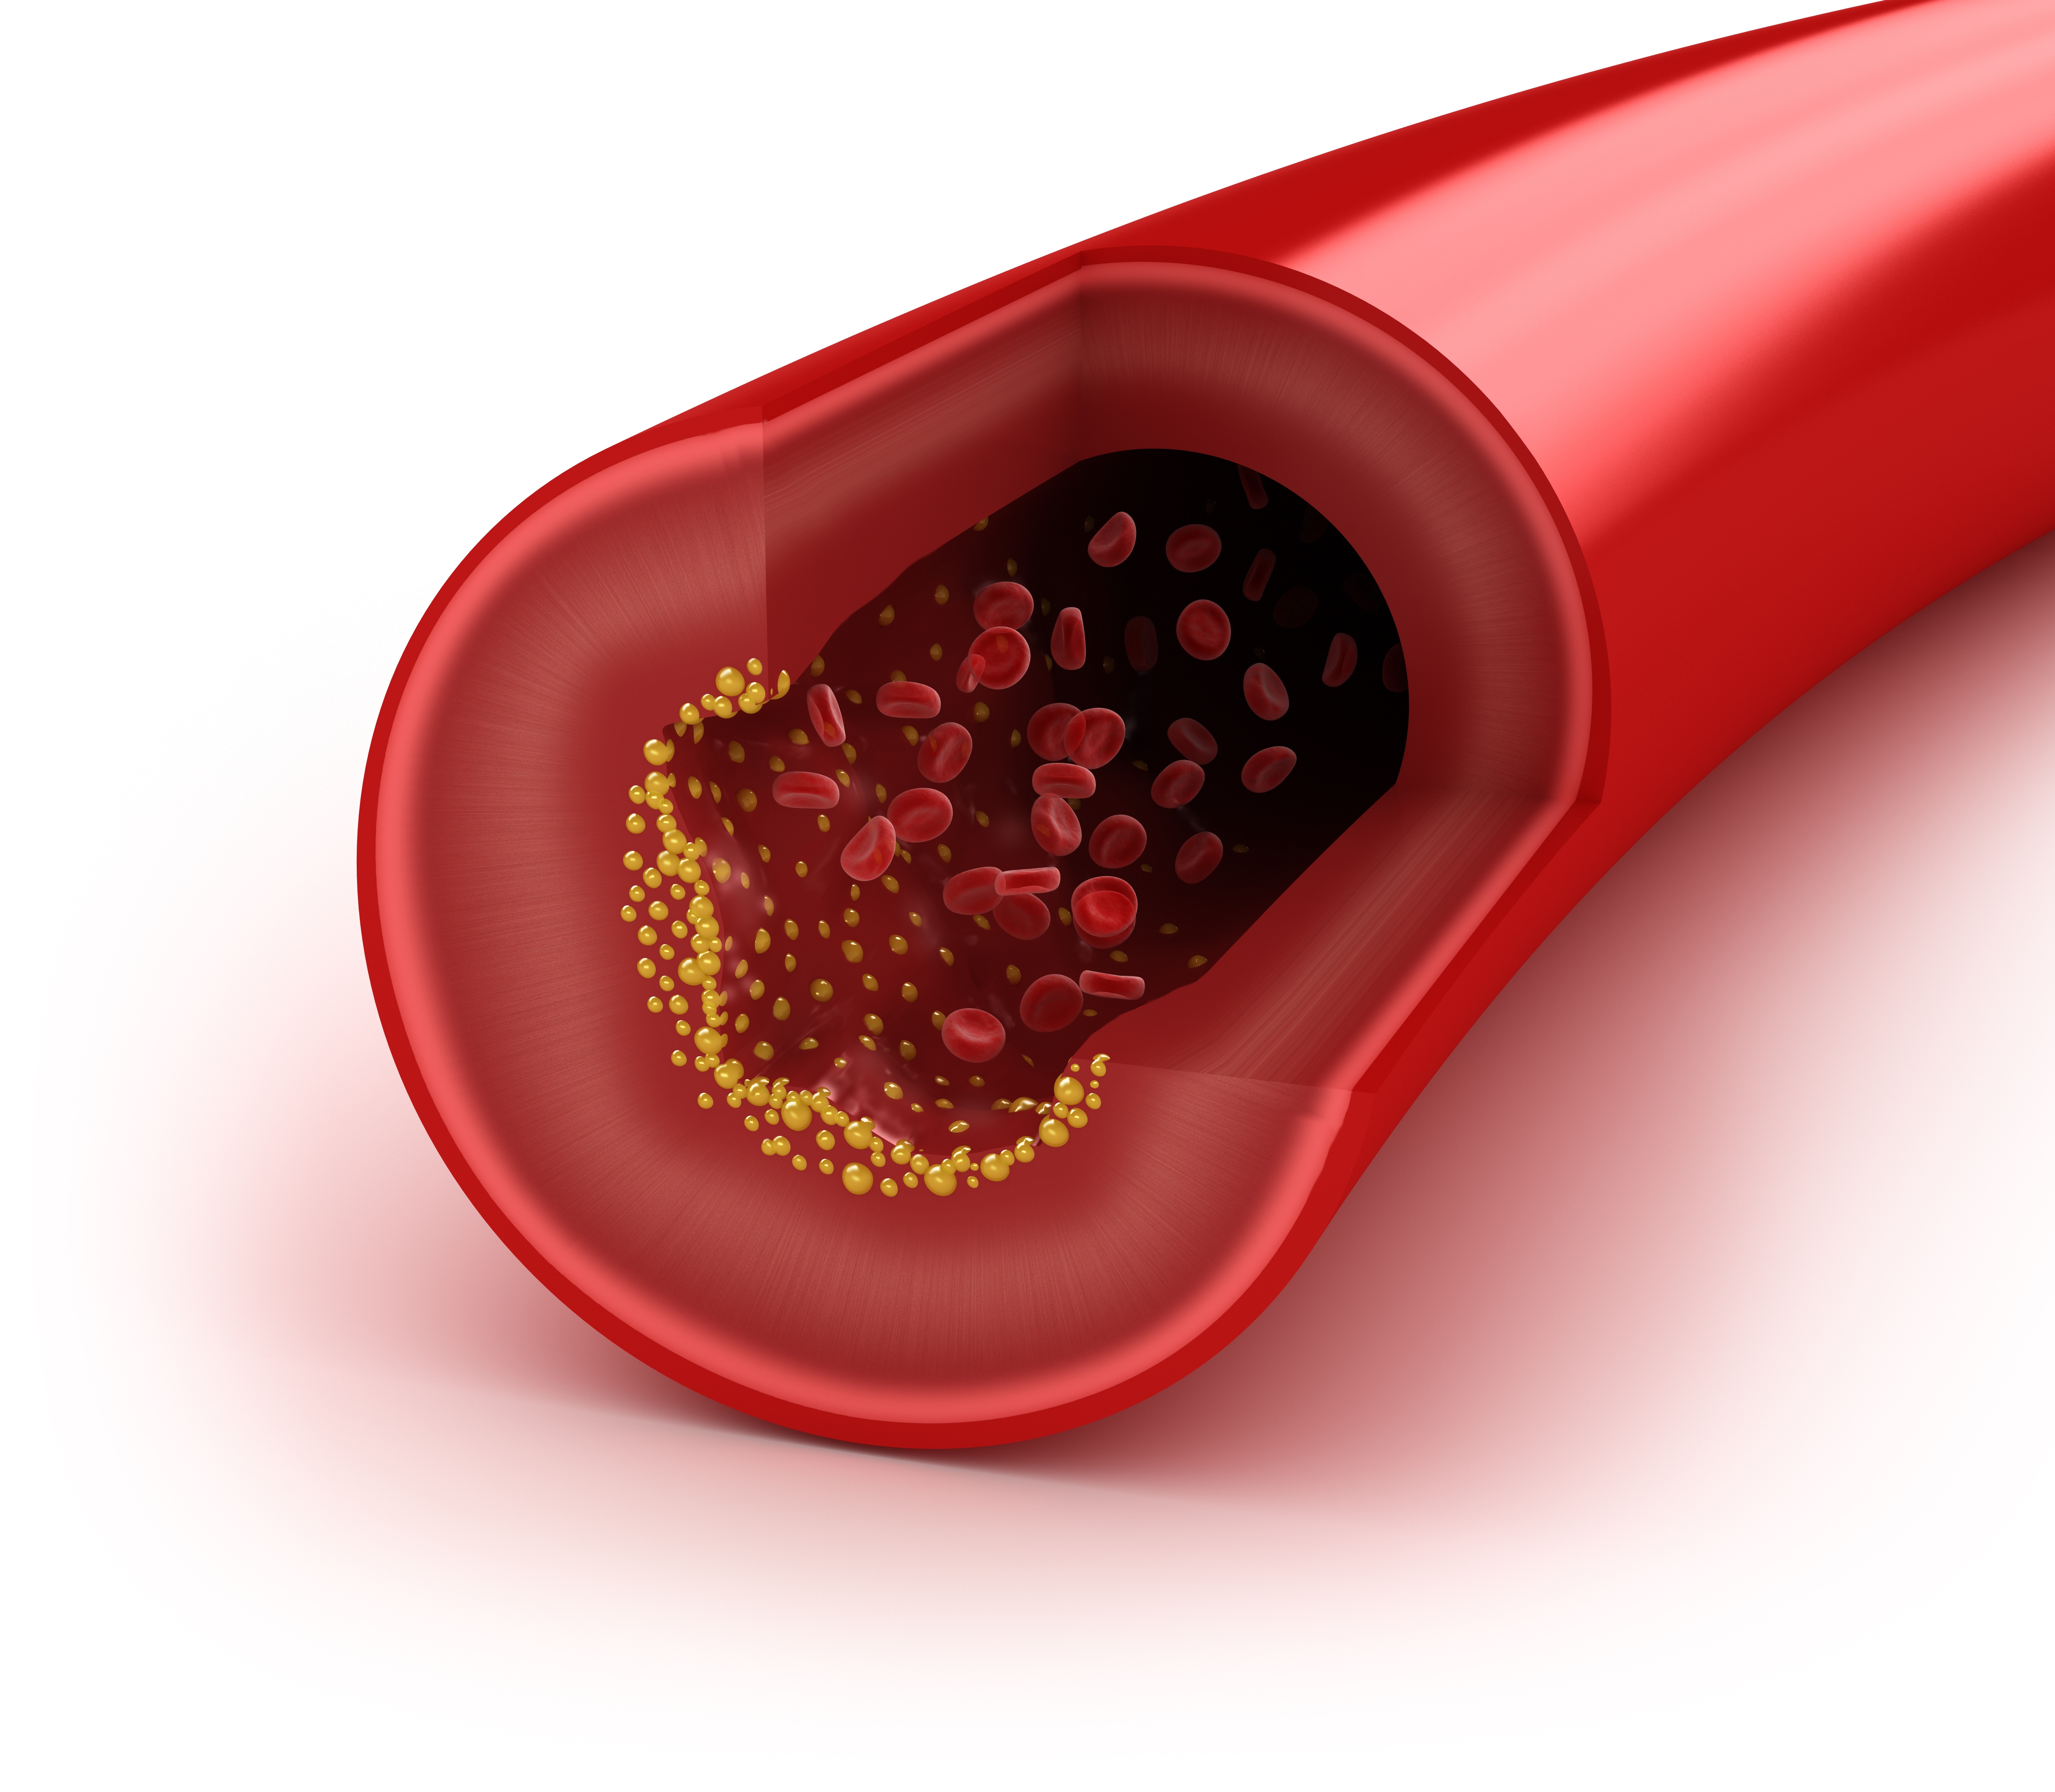 Desmontando mitos sobre el colesterol